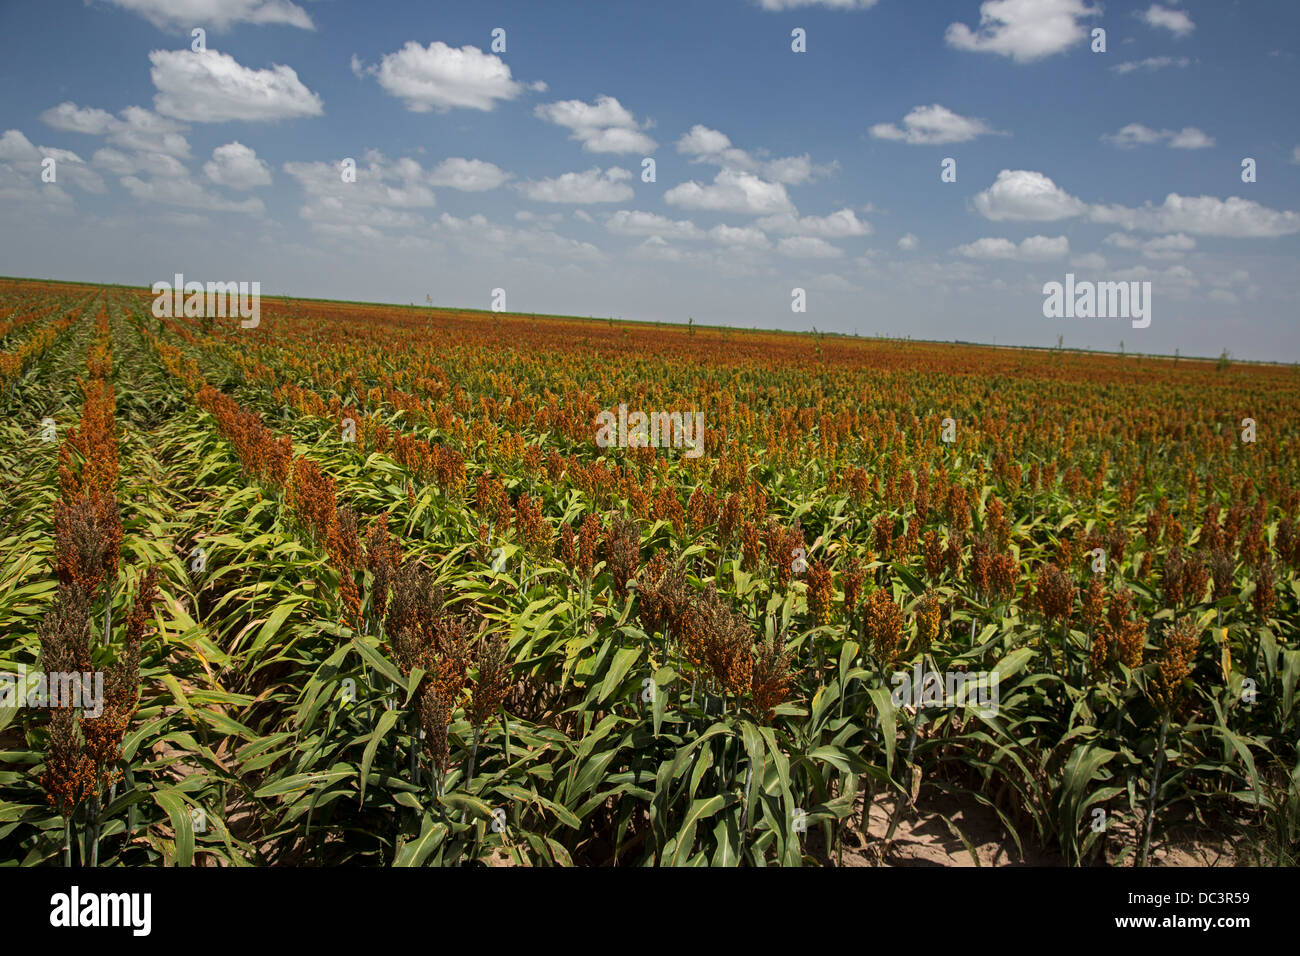 Monte Alto, Texas - Un champ de sorgho, souligné par la sécheresse, dans la vallée du Rio Grande. Banque D'Images